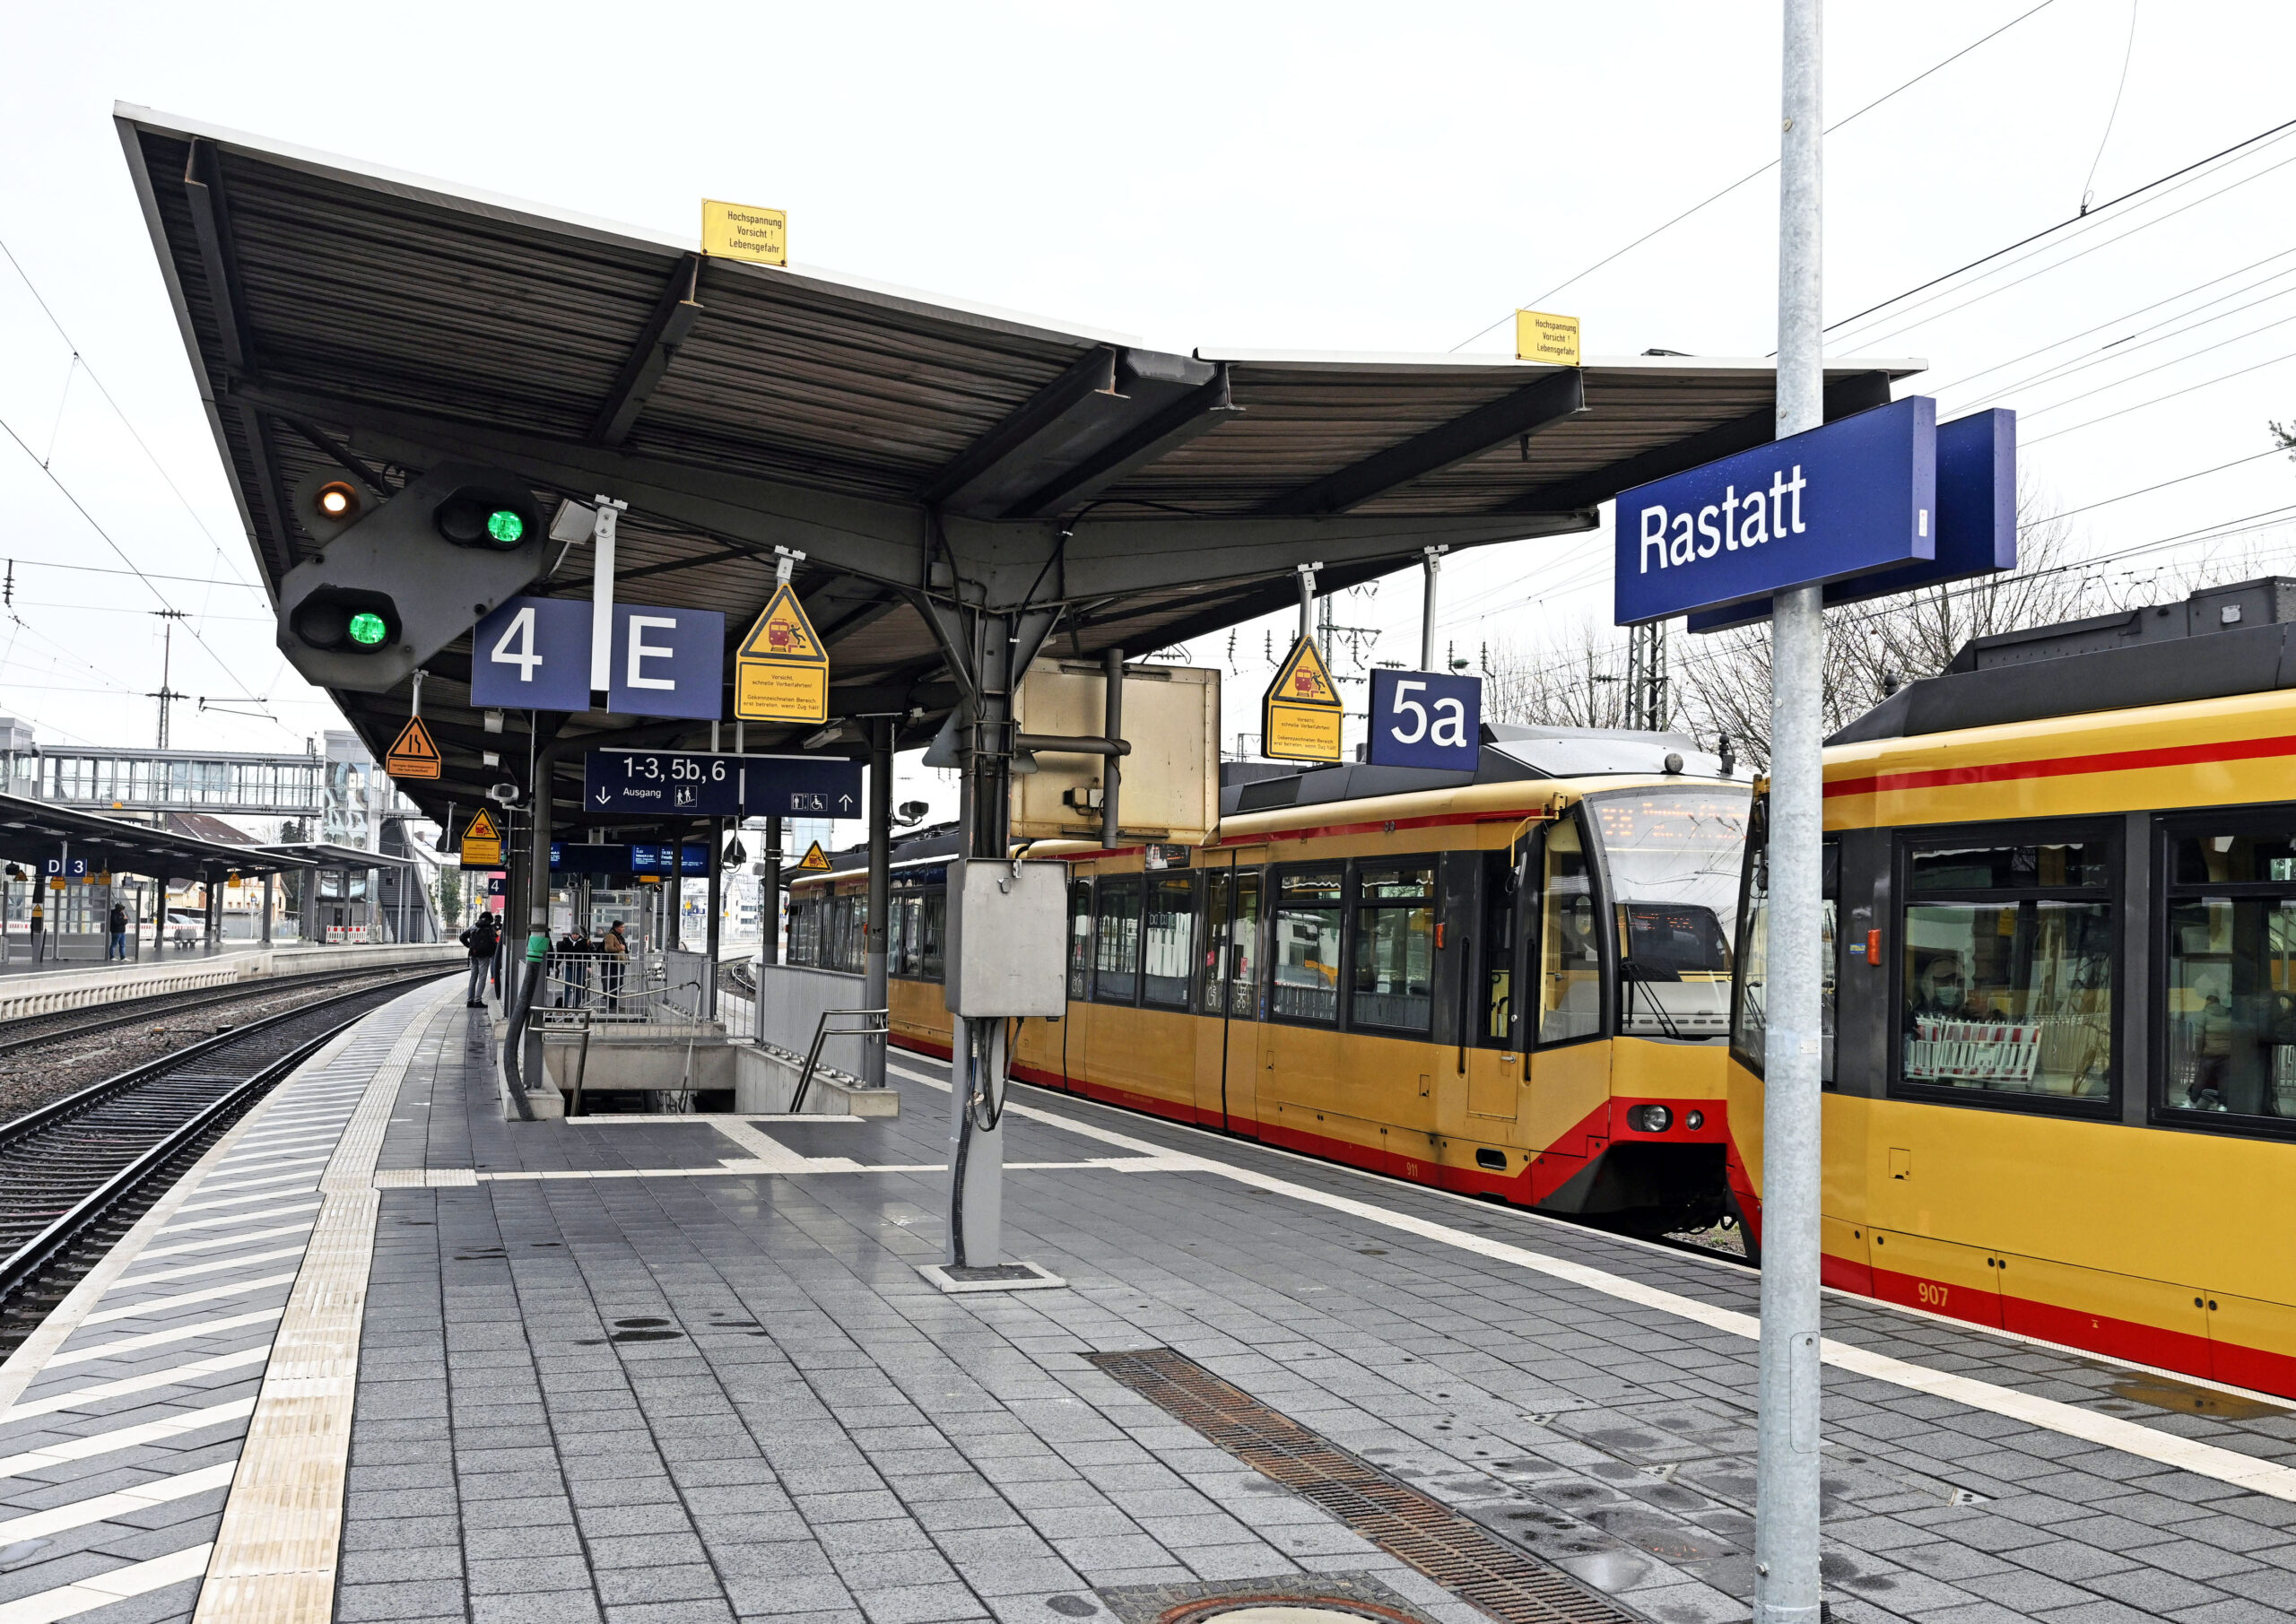 Am Bahnhof Rastatt haben zwei Mädchen eine 14-Jährige brutal zusammengeschlagen.